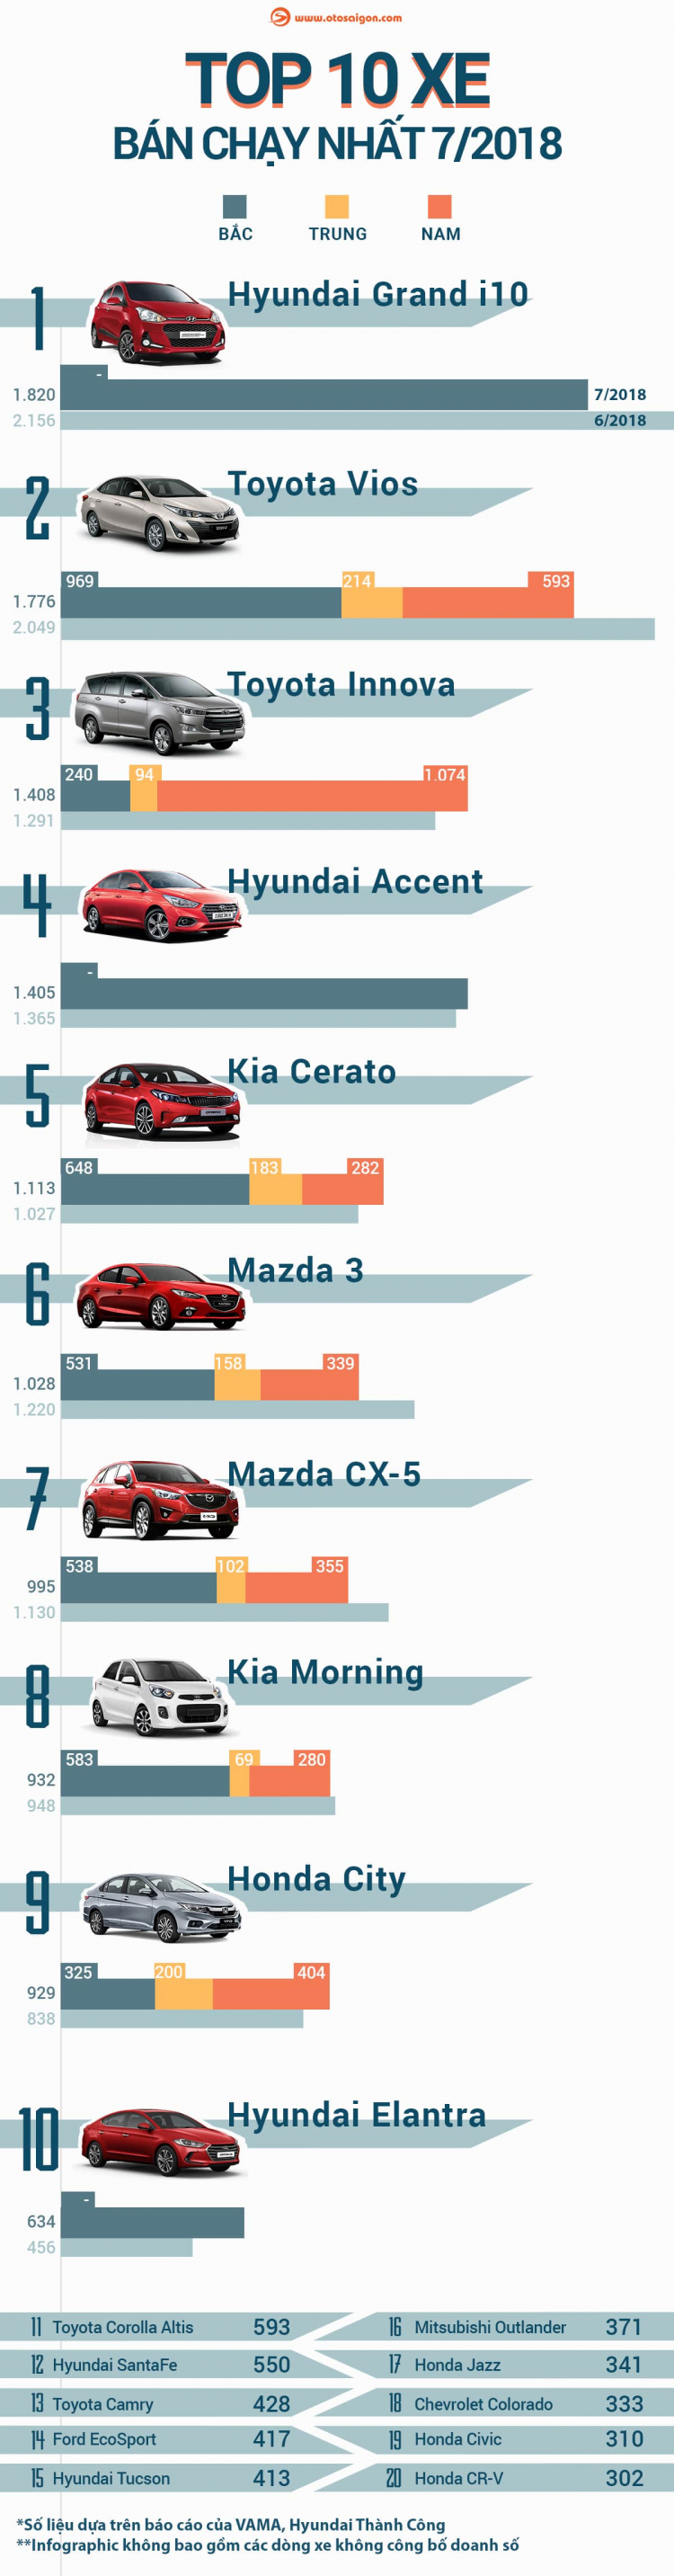 [Infographic] Top 10 xe bán chạy nhất tháng 7/2018